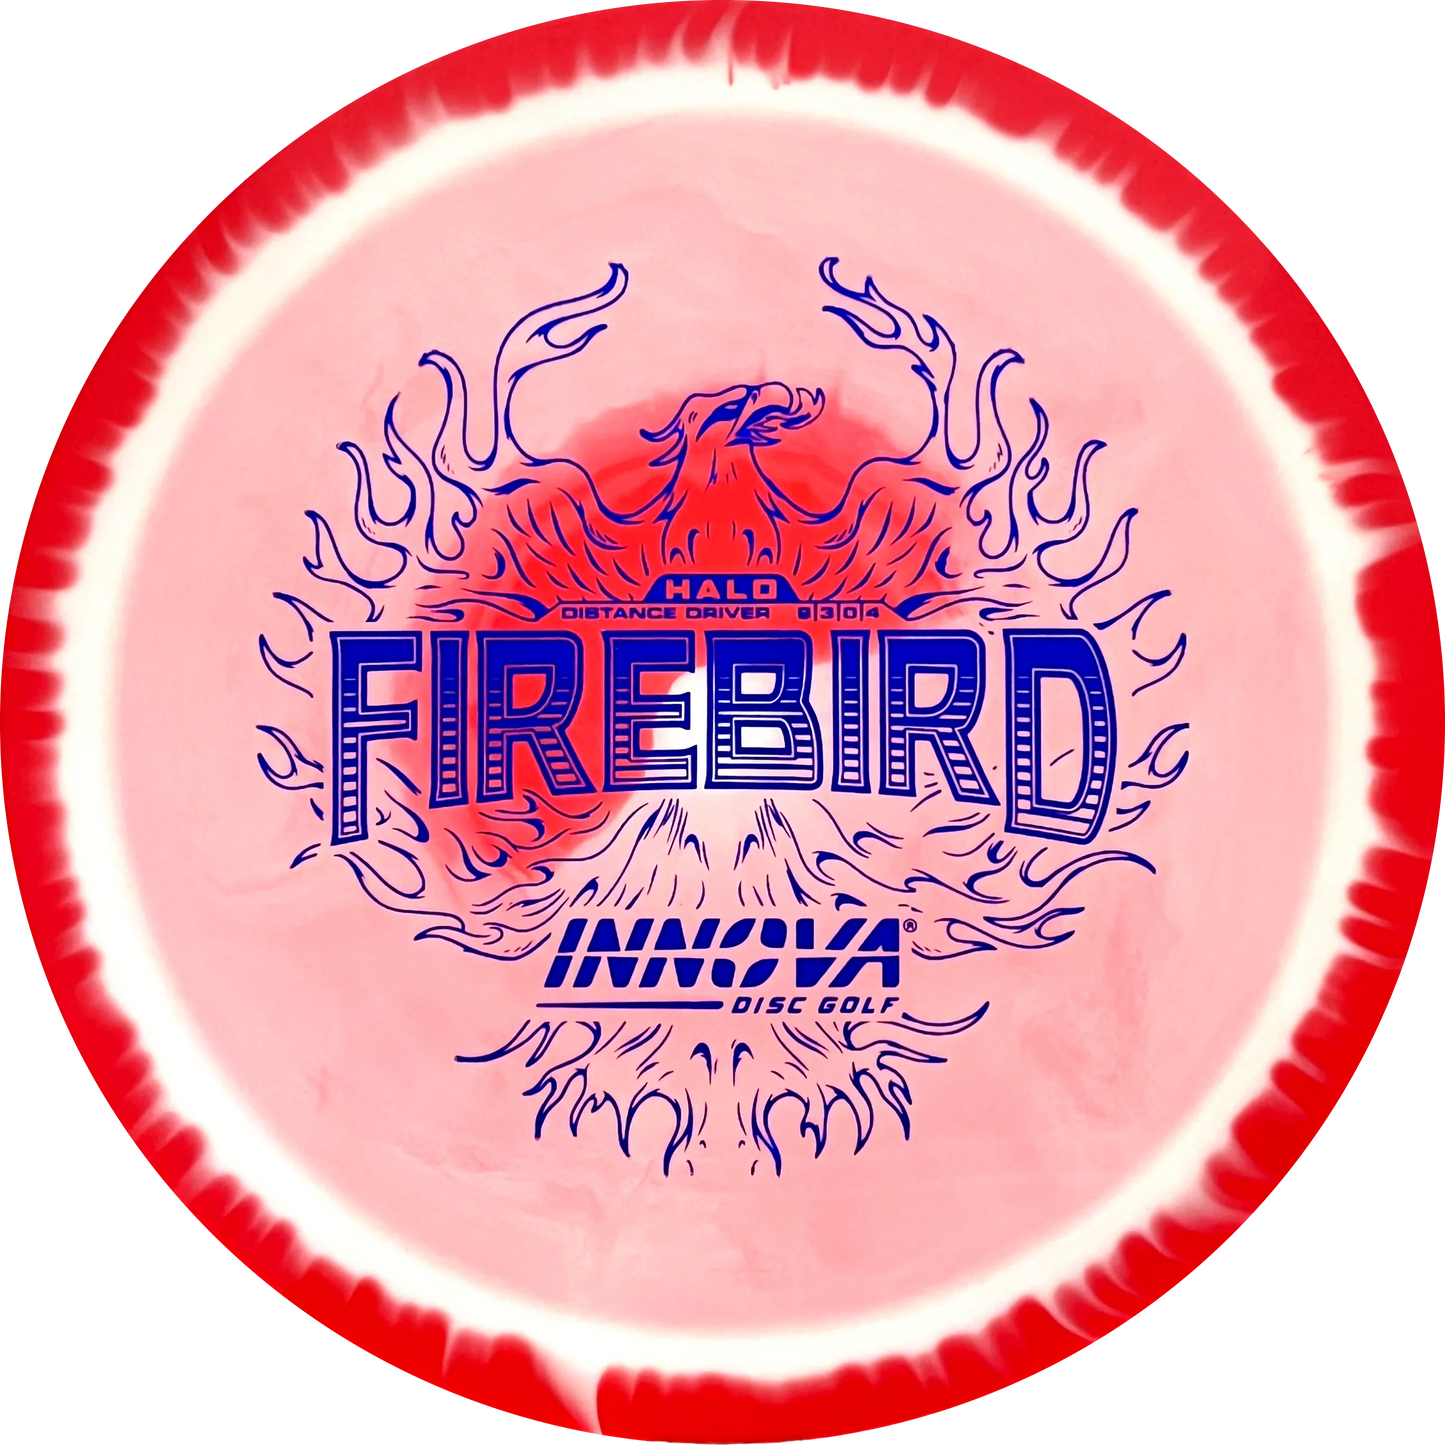 Halo Star Firebird